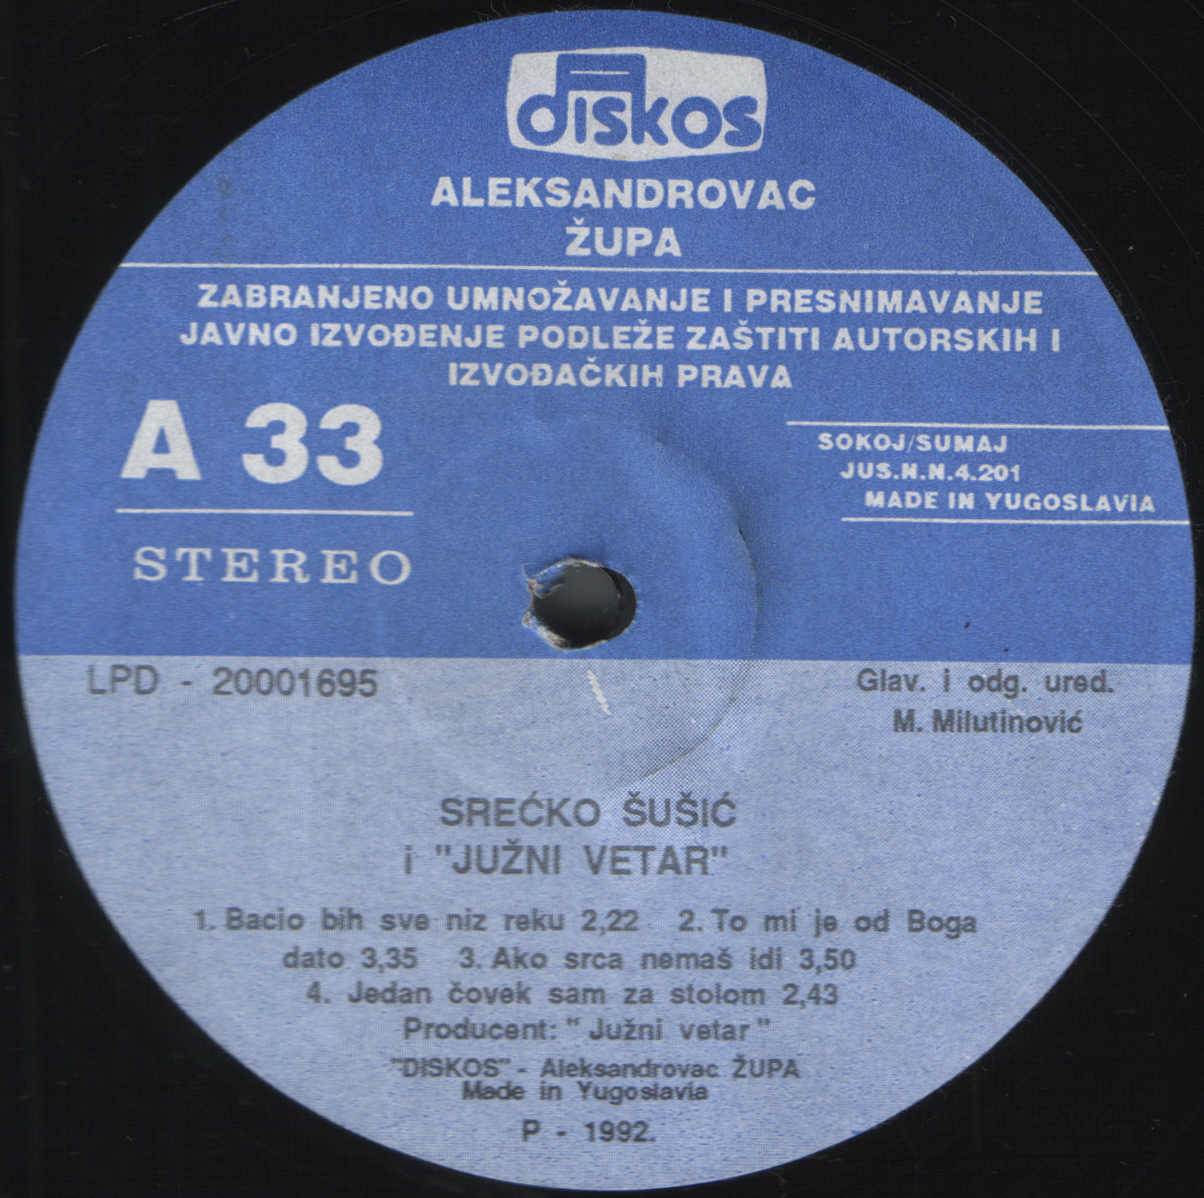 Srecko Susic 1992 A